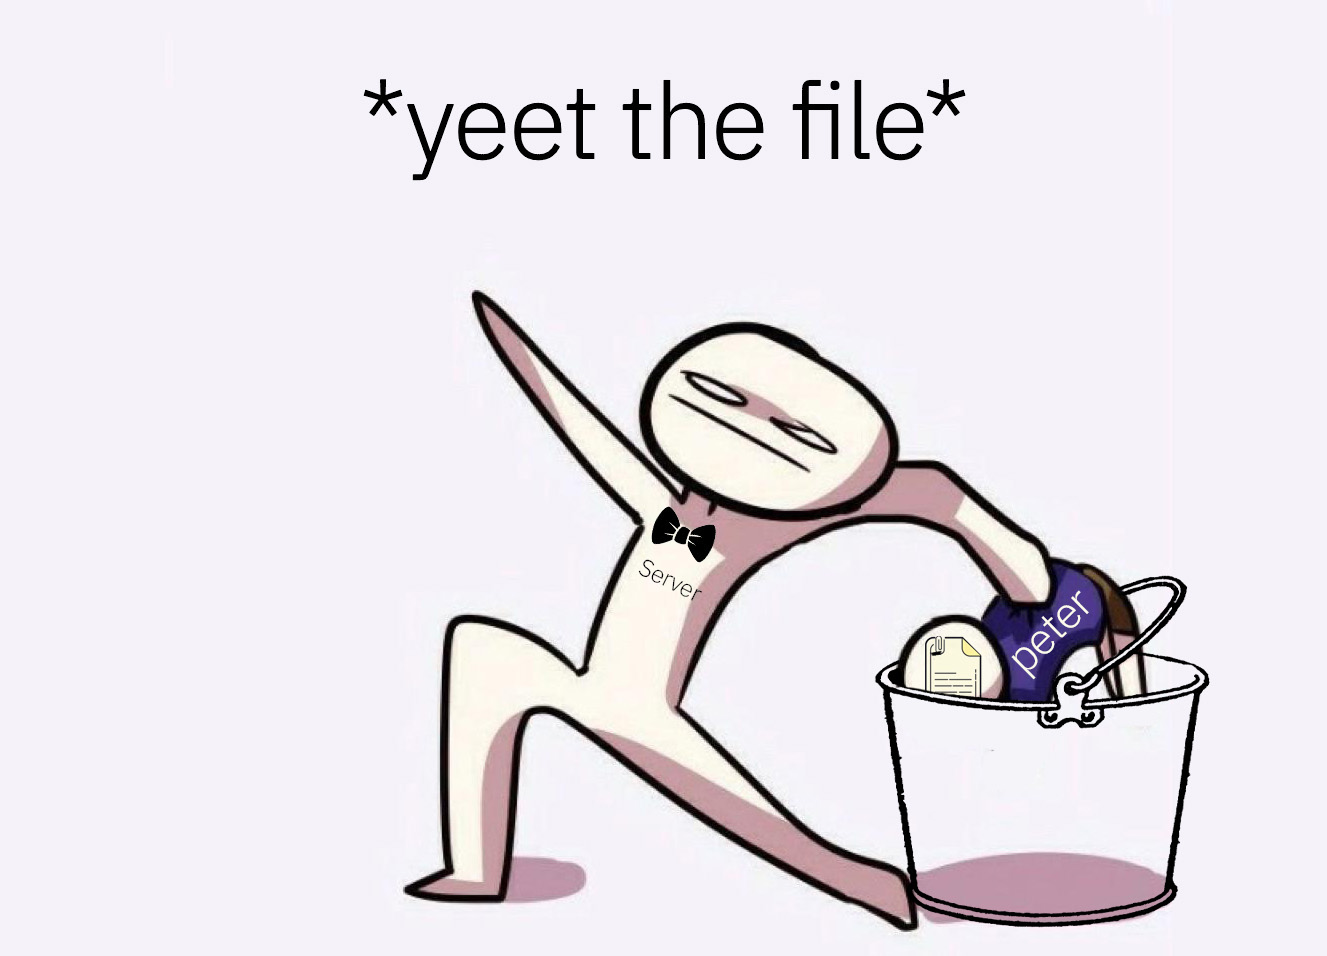 Yeet the file